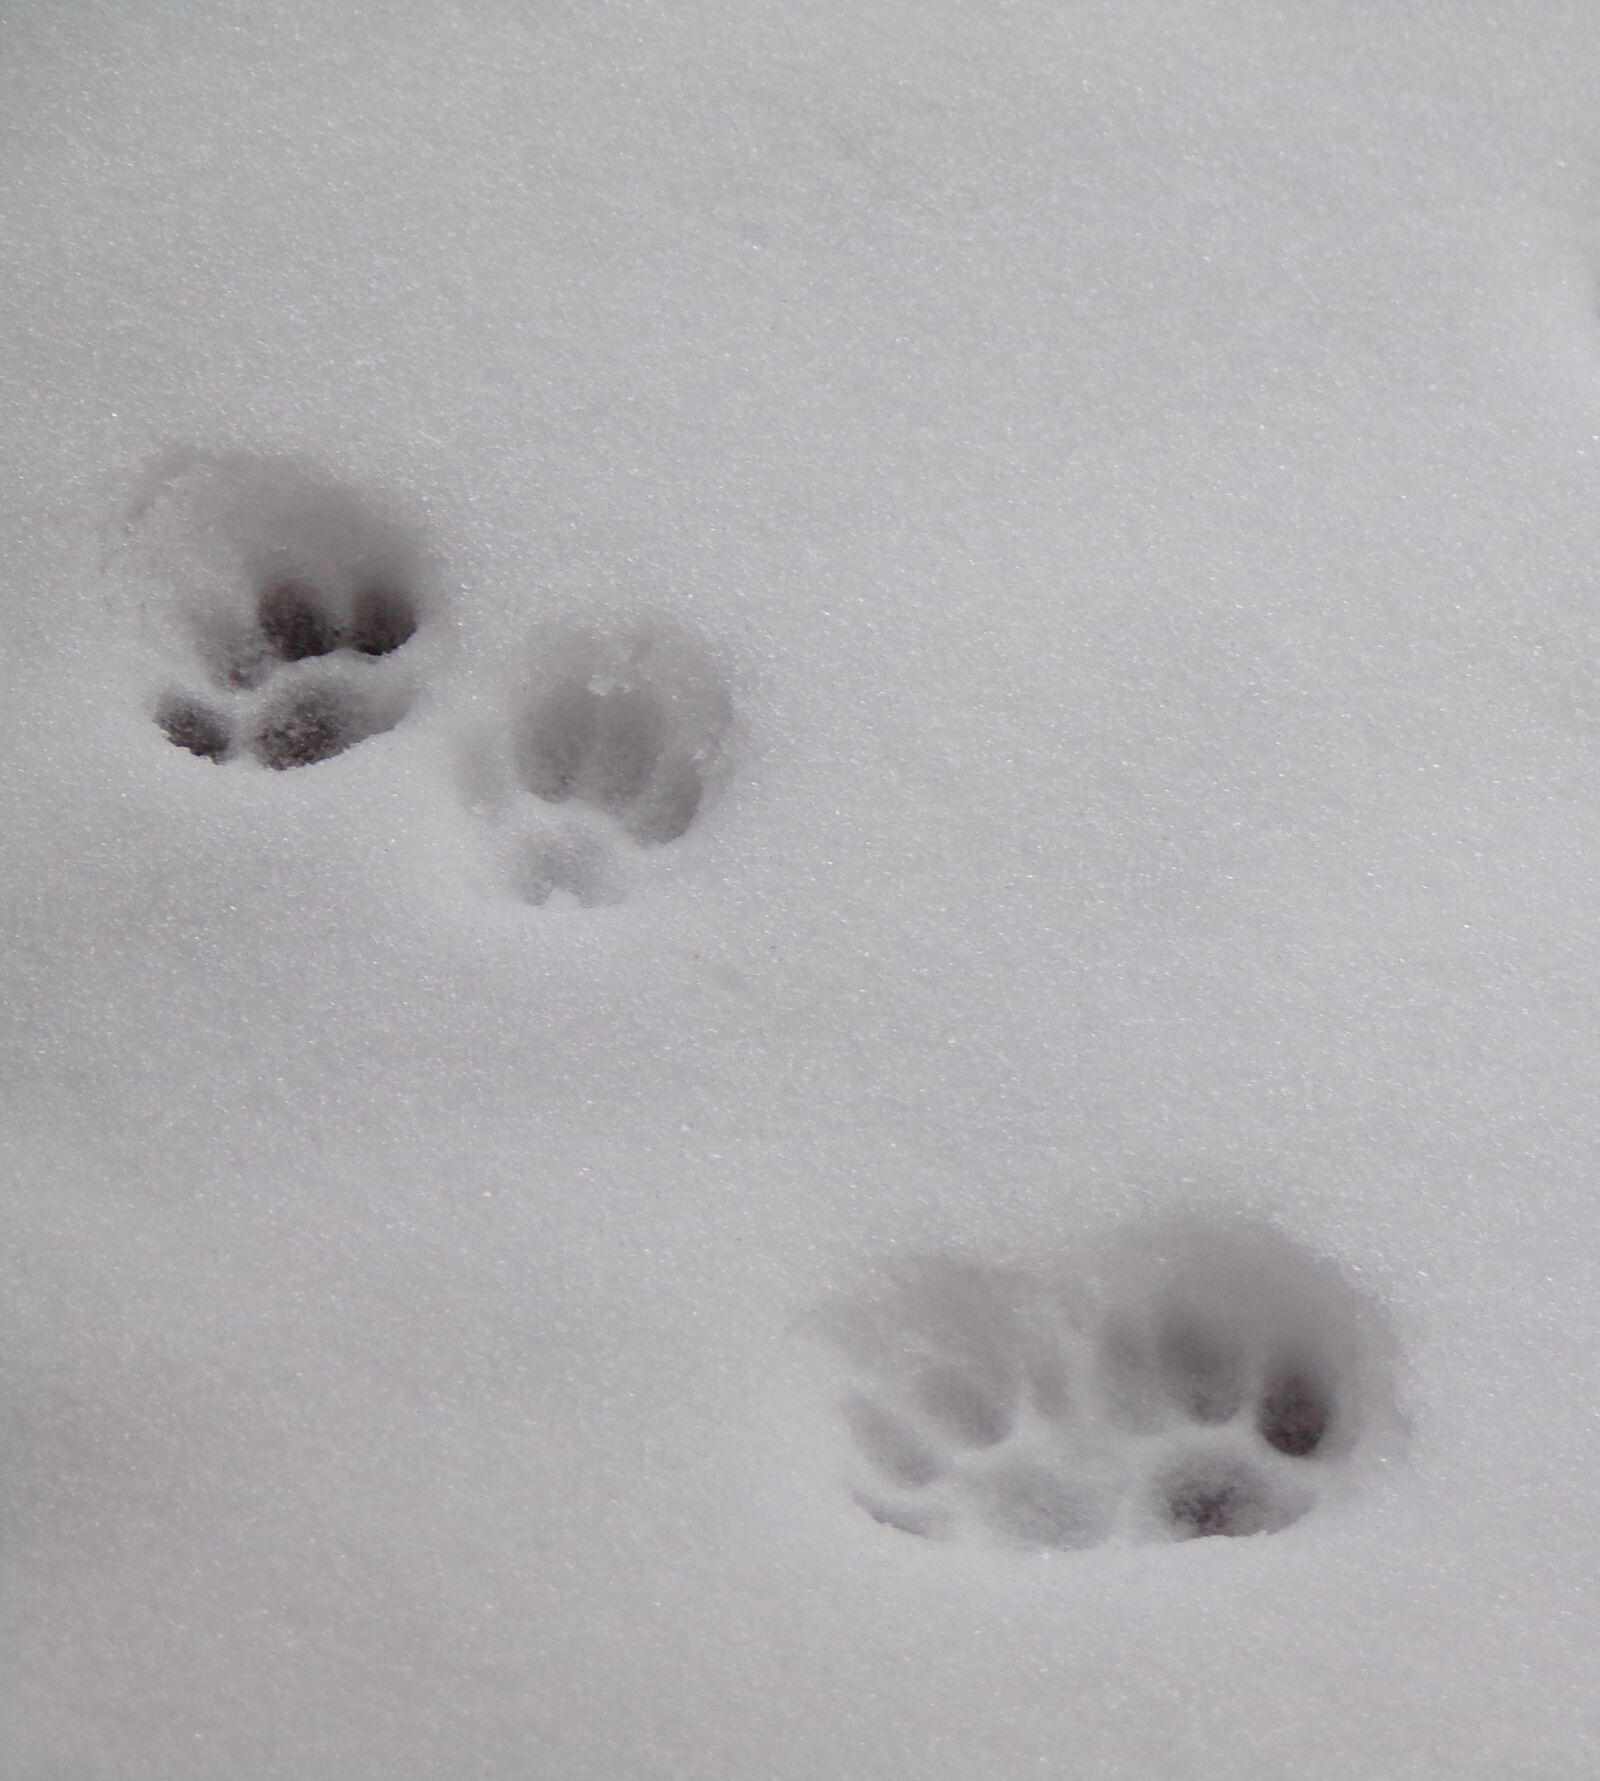 JK KODAK PIXPRO AZ422 sample photo. Snow, winter, cat photography